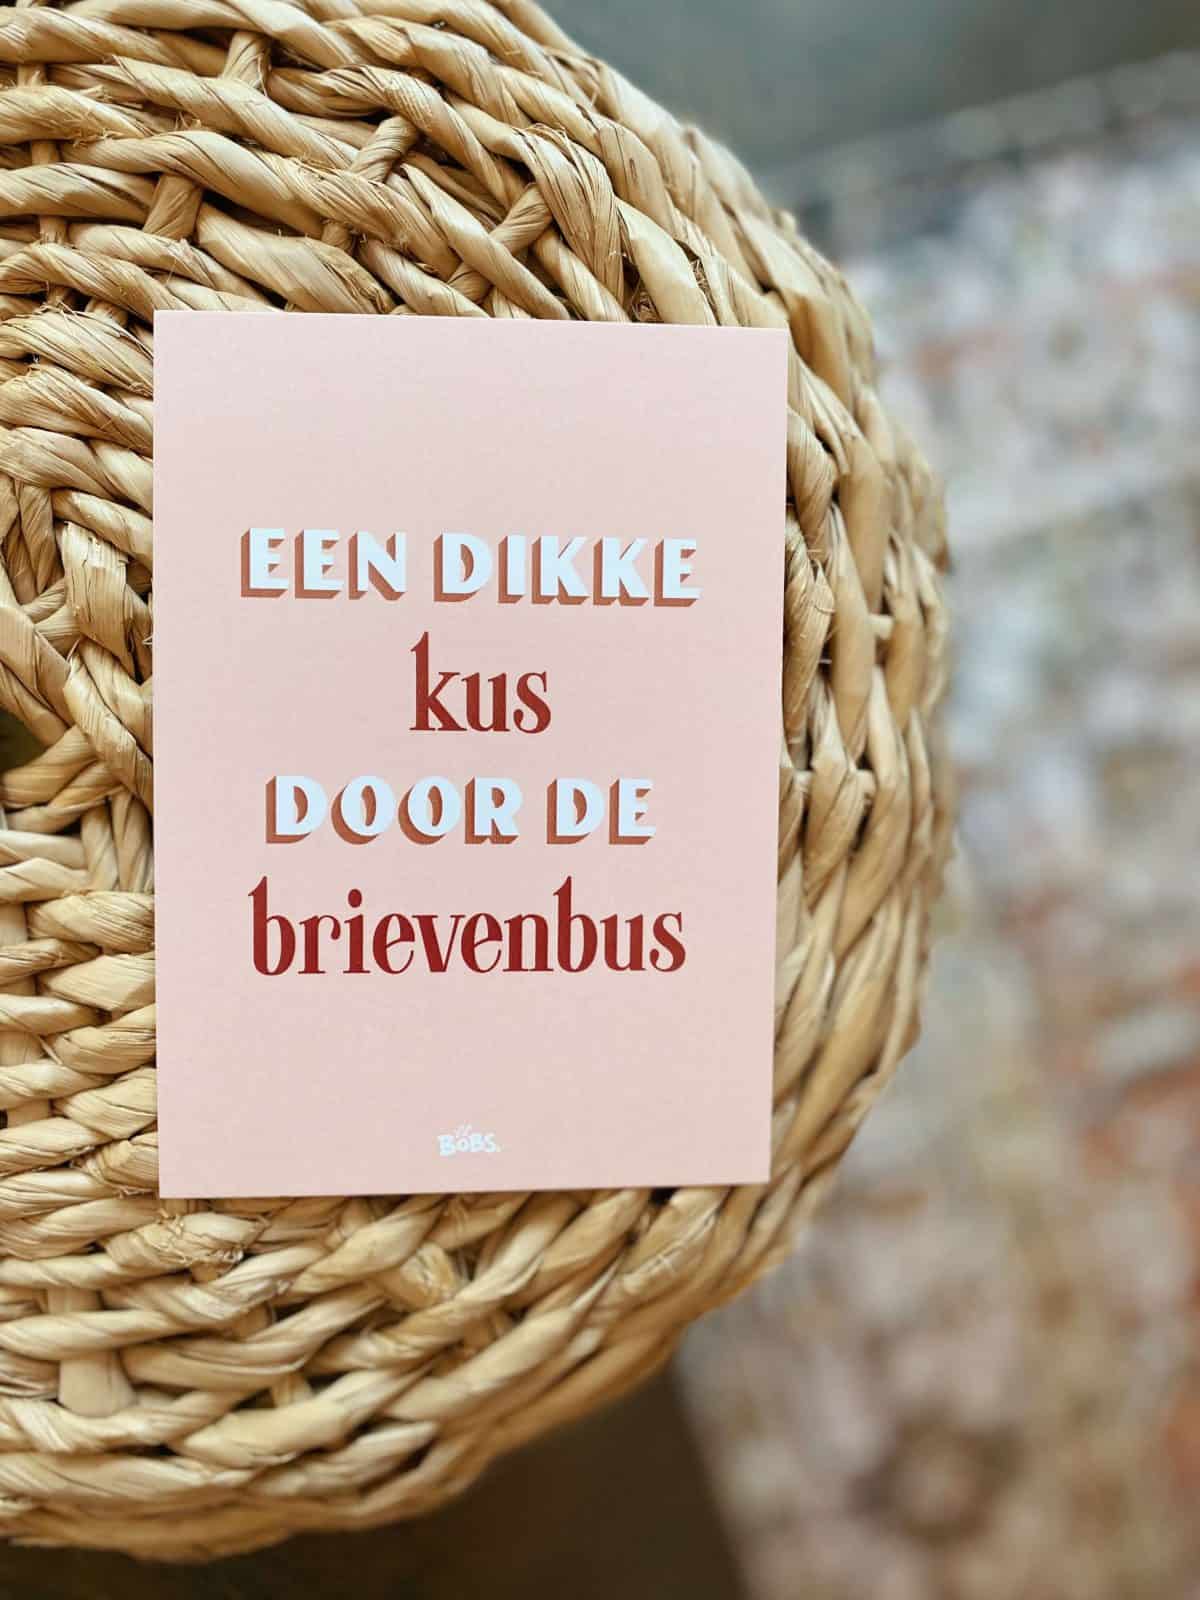 lilbobs.nl-mrsbobs-dikkekus-doorde-brievenbus